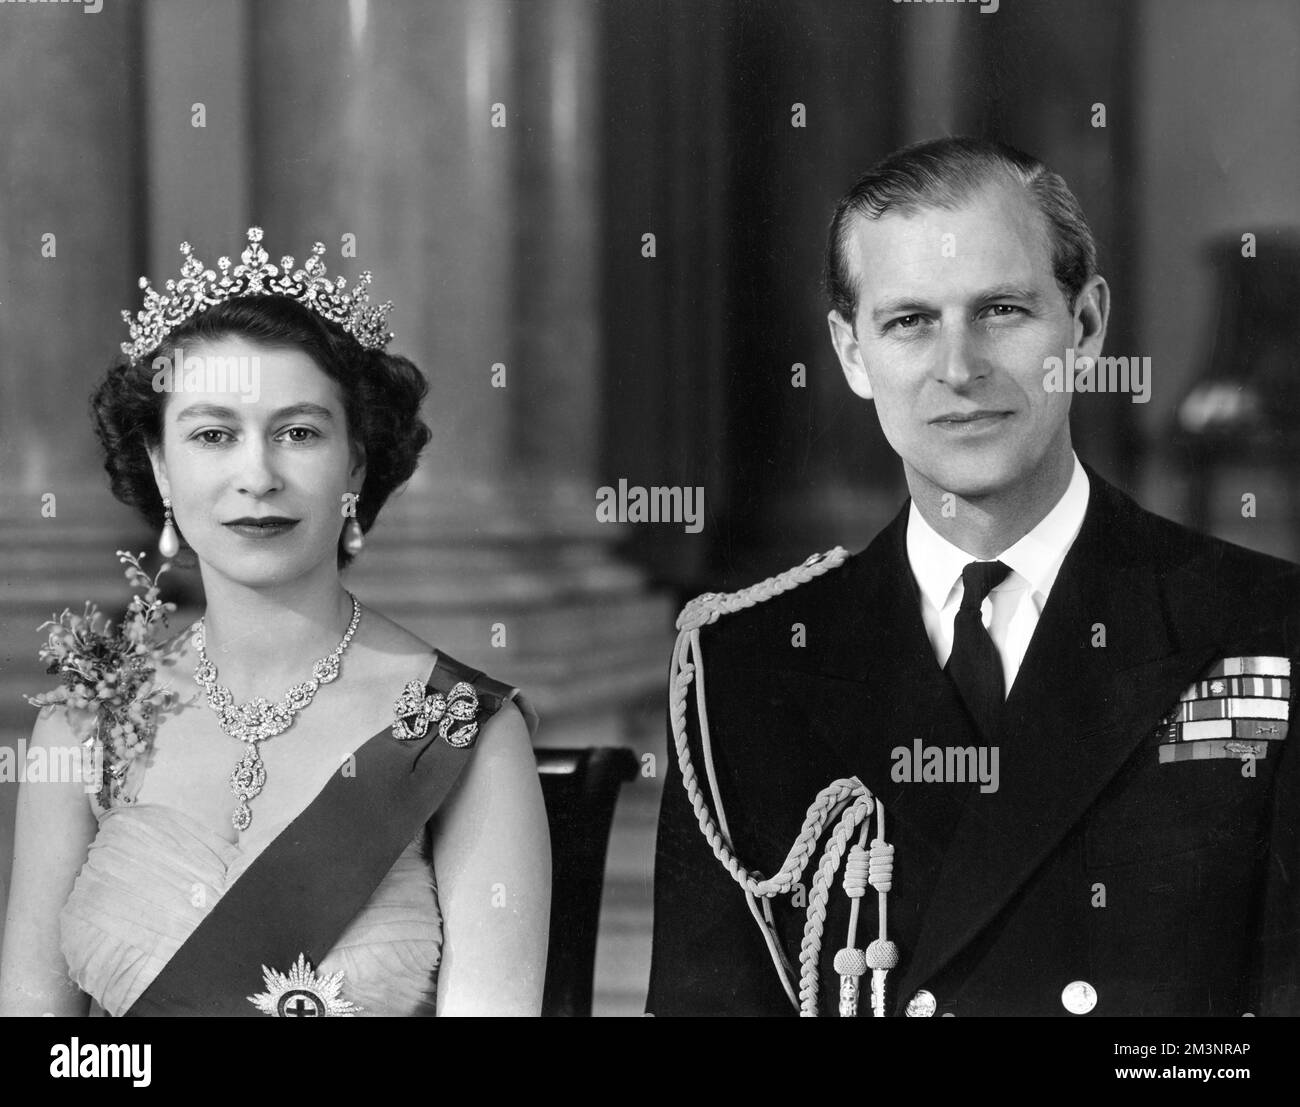 La reine Elizabeth II et le prince Philip, duc d'Édimbourg photographiés ensemble à l'entrée principale du palais de Buckingham en 1954. La Reine porte une robe de soirée en tulle jaune ornée de jets de mimosa et de broderie de pailette d'or et porte le ruban bleu et l'étoile de la jarretière. Son collier était un cadeau de mariage du Nizam de Hyderabad; le tiara était également un cadeau de mariage de la reine Marie. La broche en forme de noeud et les pendants d'oreilles sont ornés de diamants. Le duc porte l'uniforme de l'amiral de la flotte. Date: 1954 Banque D'Images